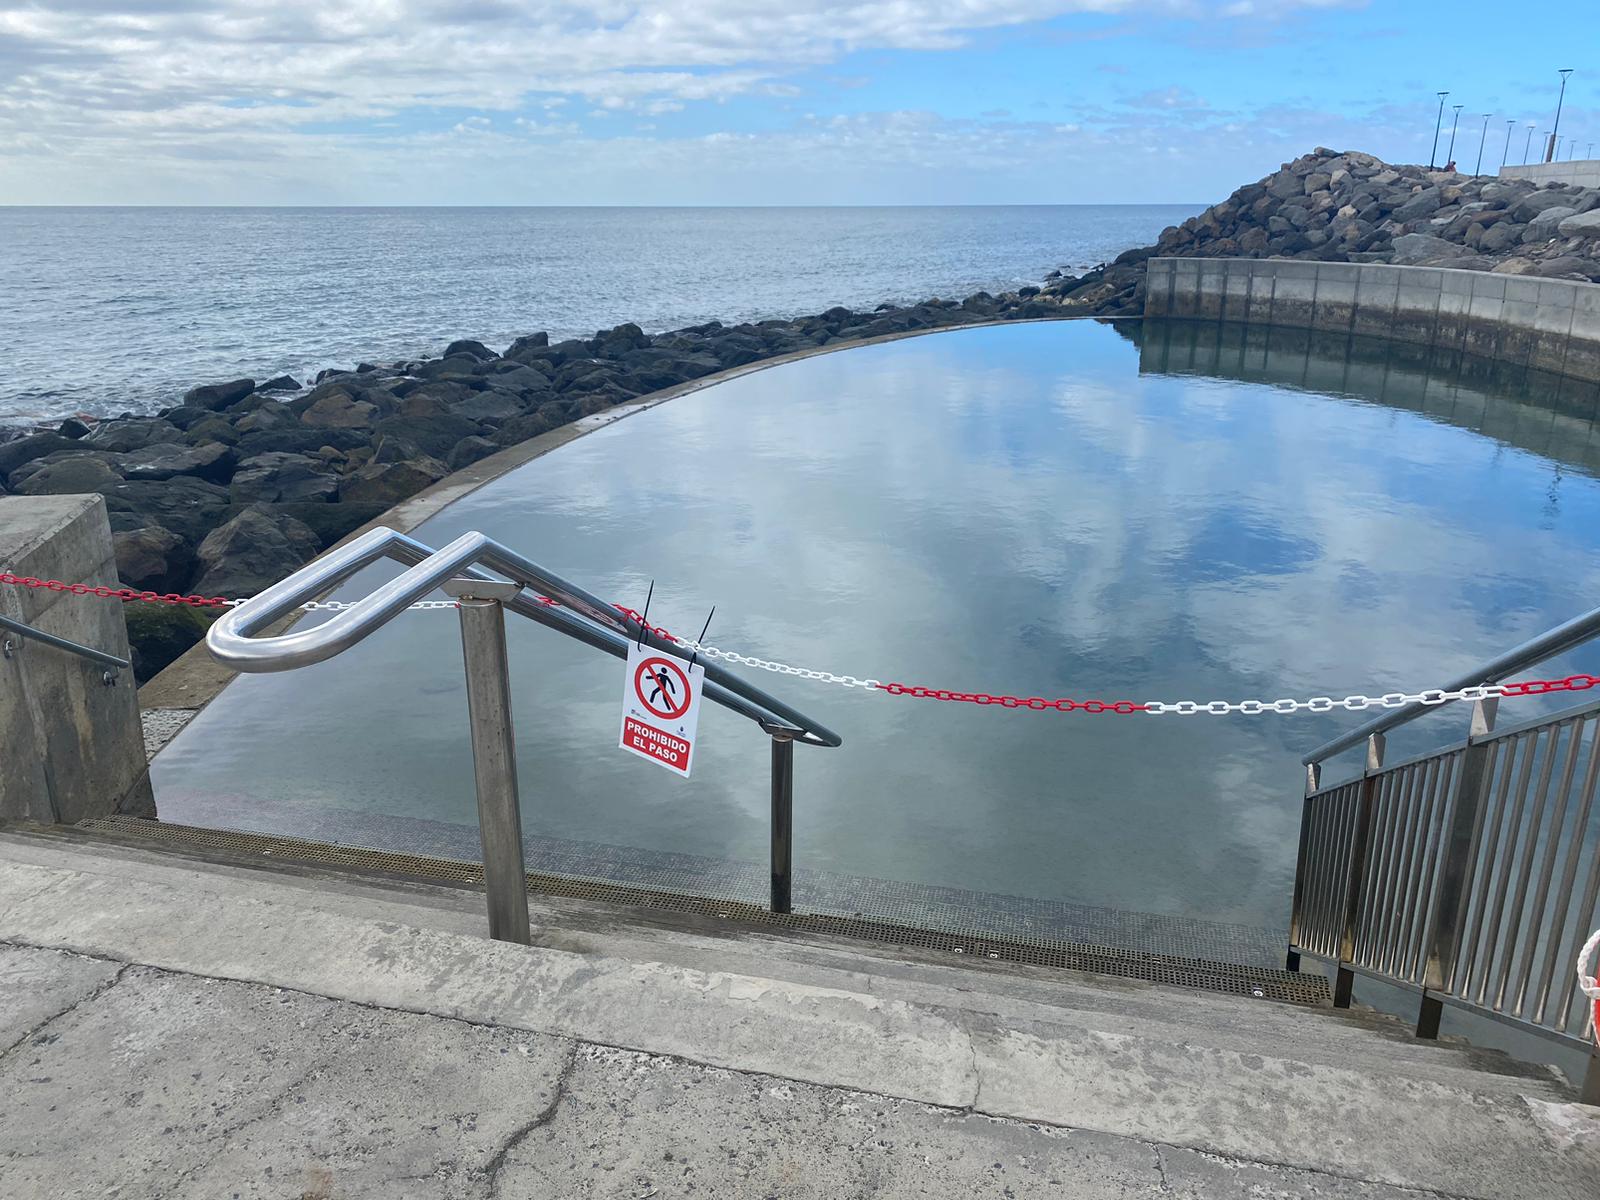 La piscina, ubicada en la playa de El Perchel, permanece cerrada al baño.